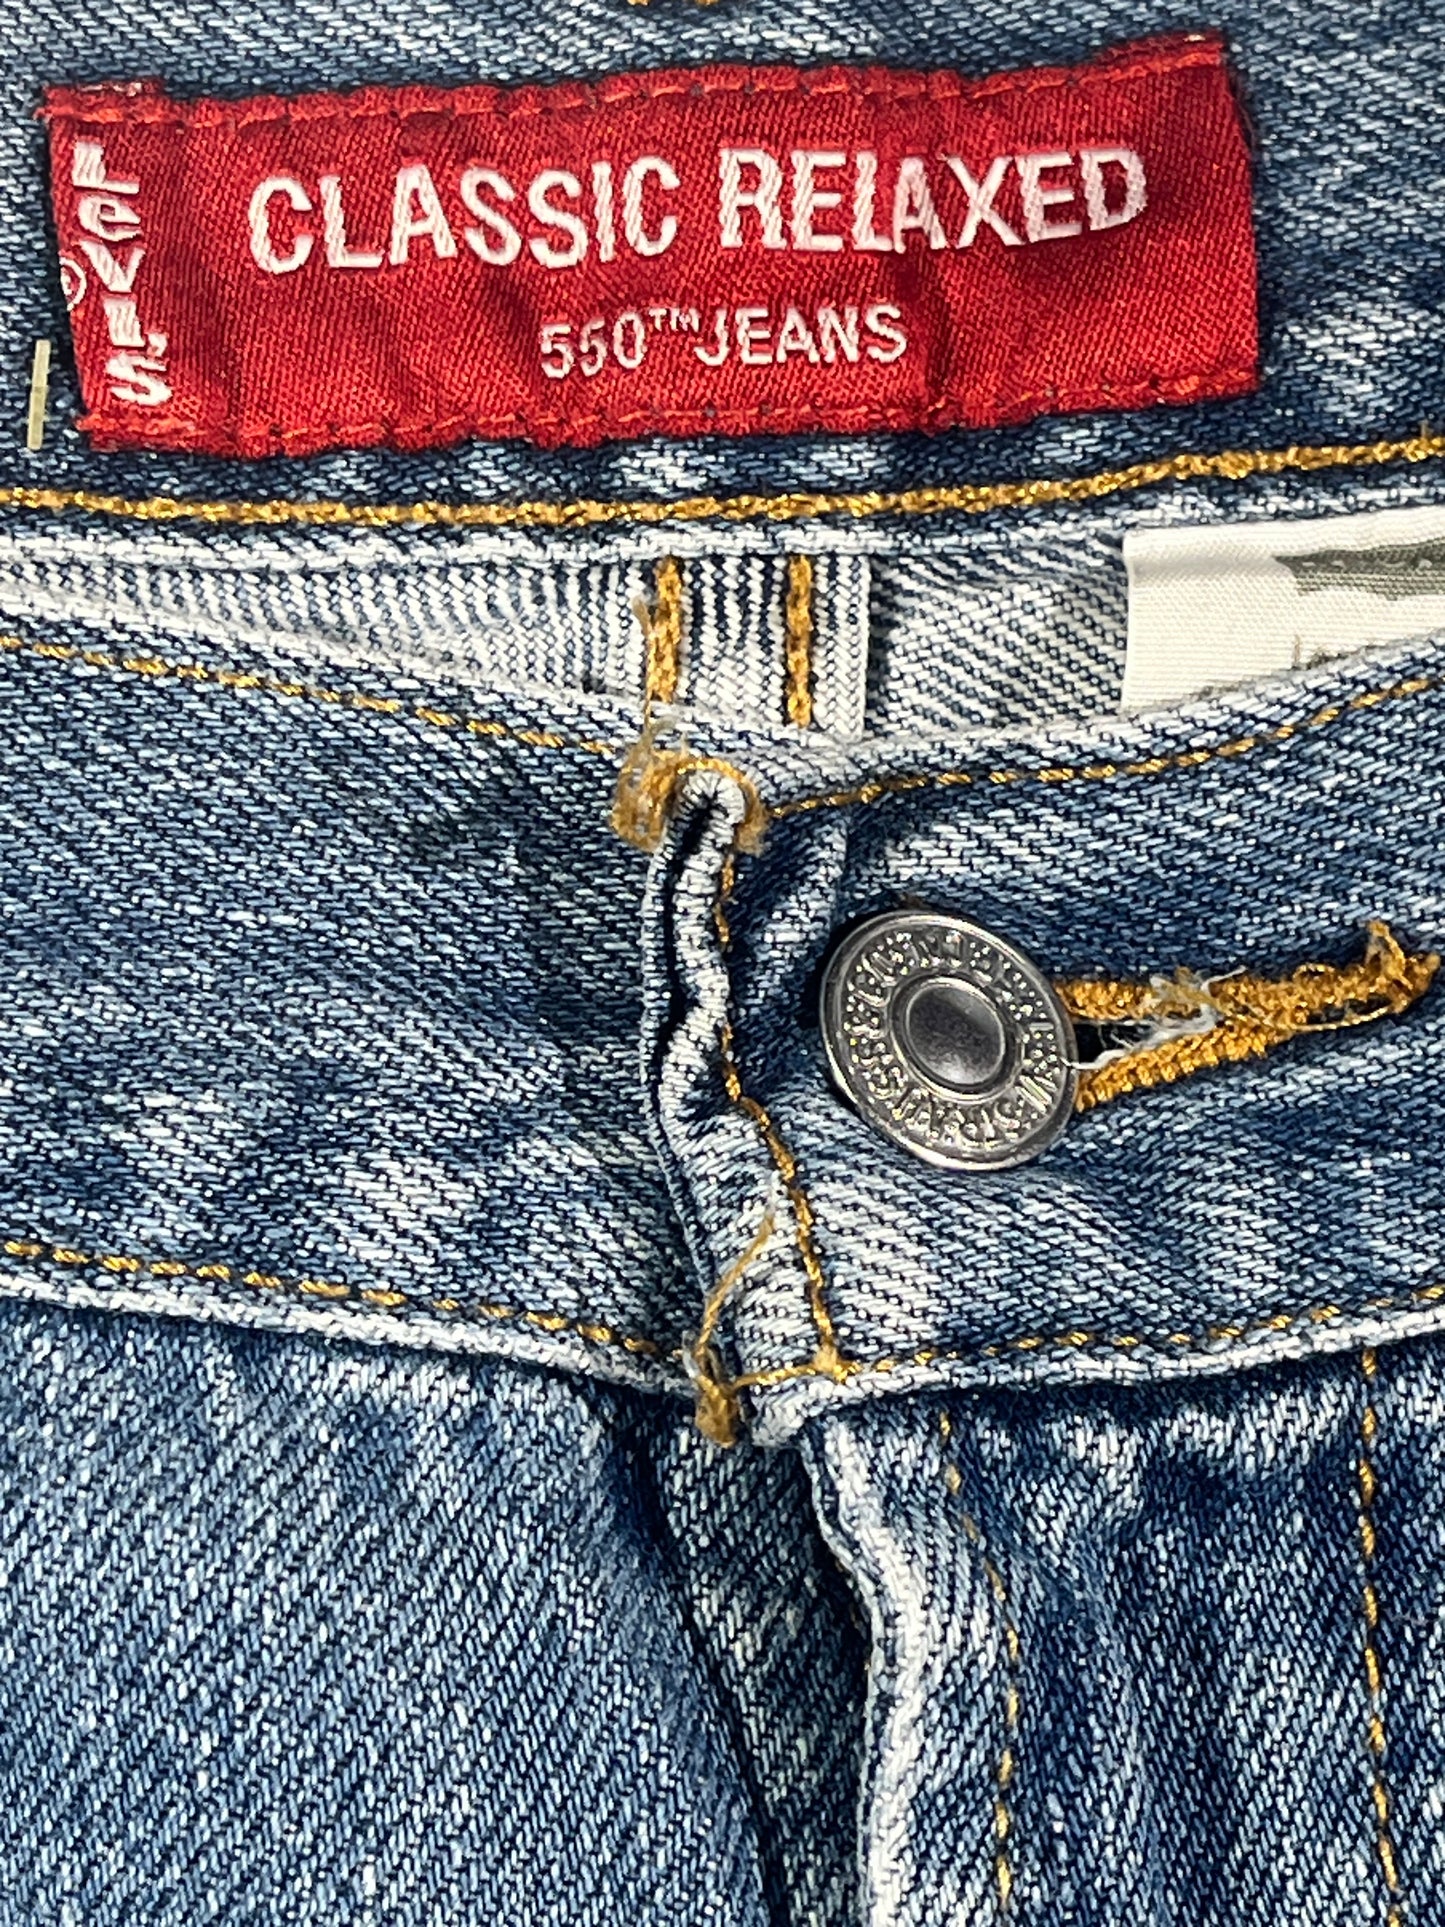 Vintage Levis Jeans 550 Denim Pants Classic Relaxed